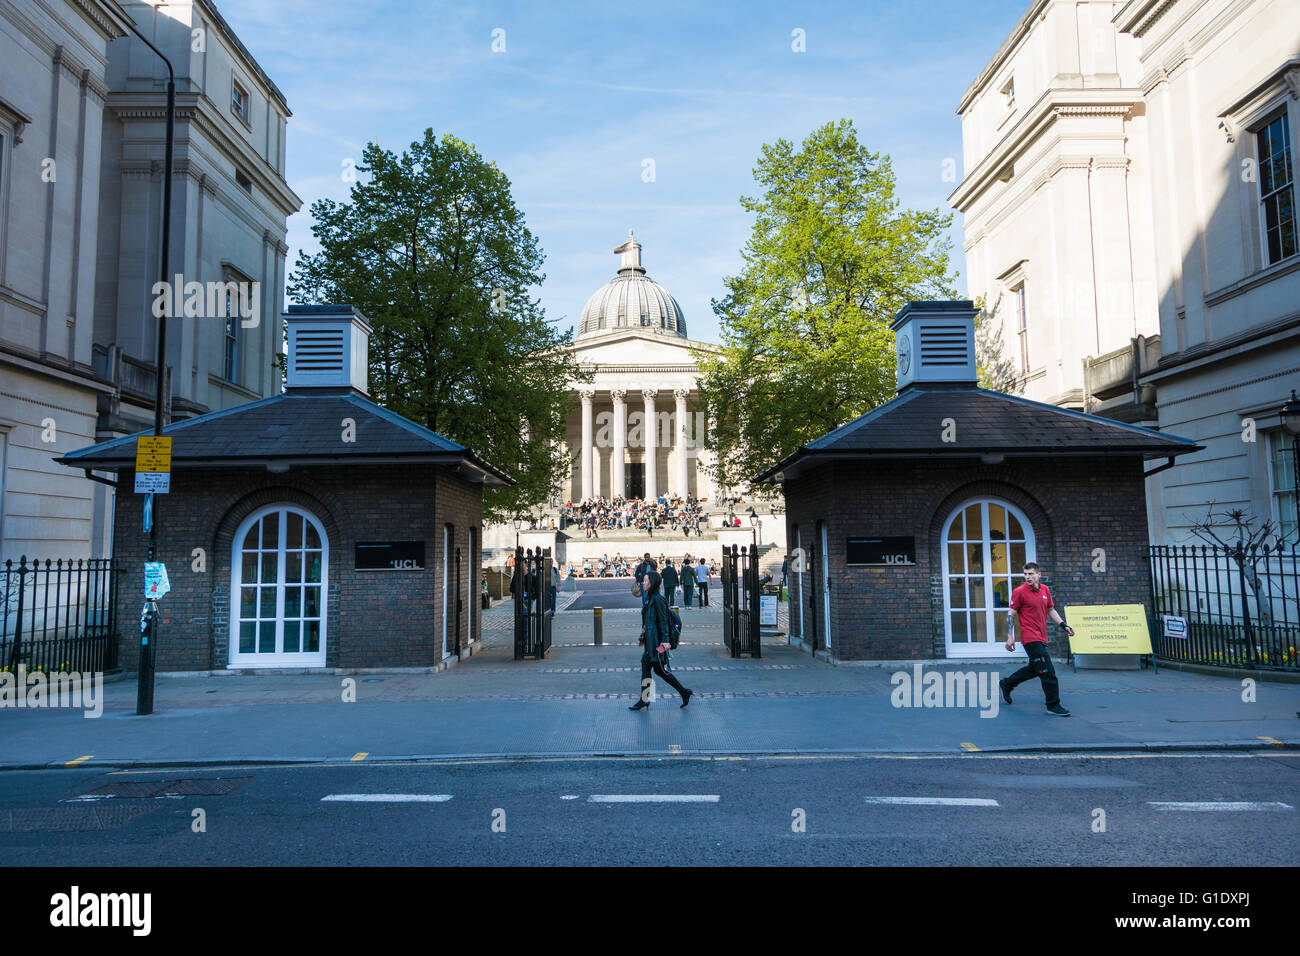 L'entrée de l'UCL et du Quad, Gower Street, Londres, Angleterre, Royaume-Uni Banque D'Images